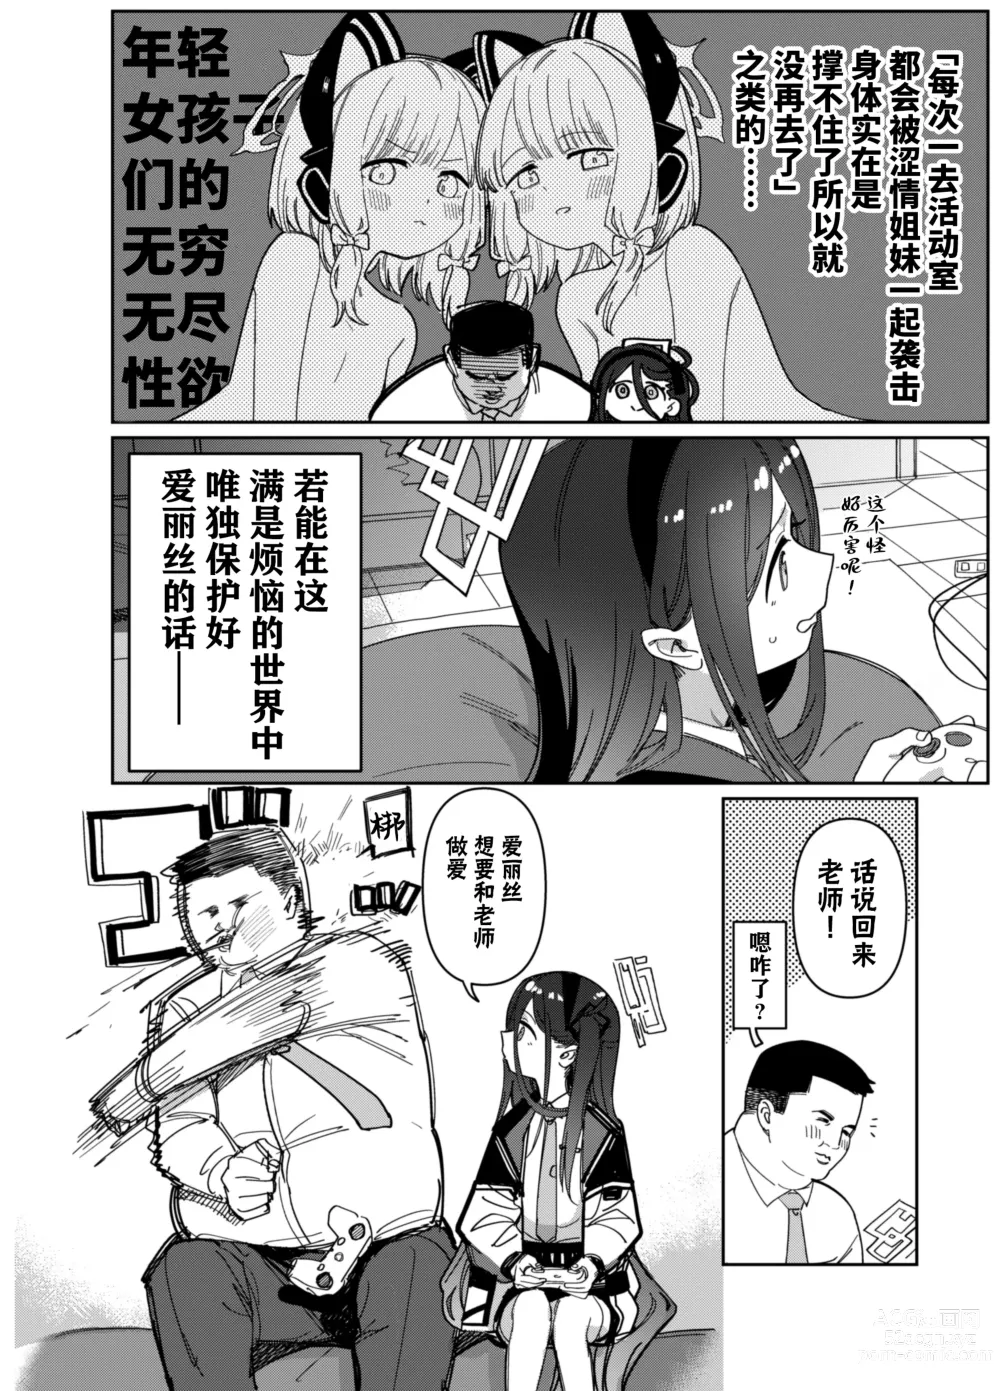 Page 5 of doujinshi 由于老师太弱了 爱丽丝来保护好老师!